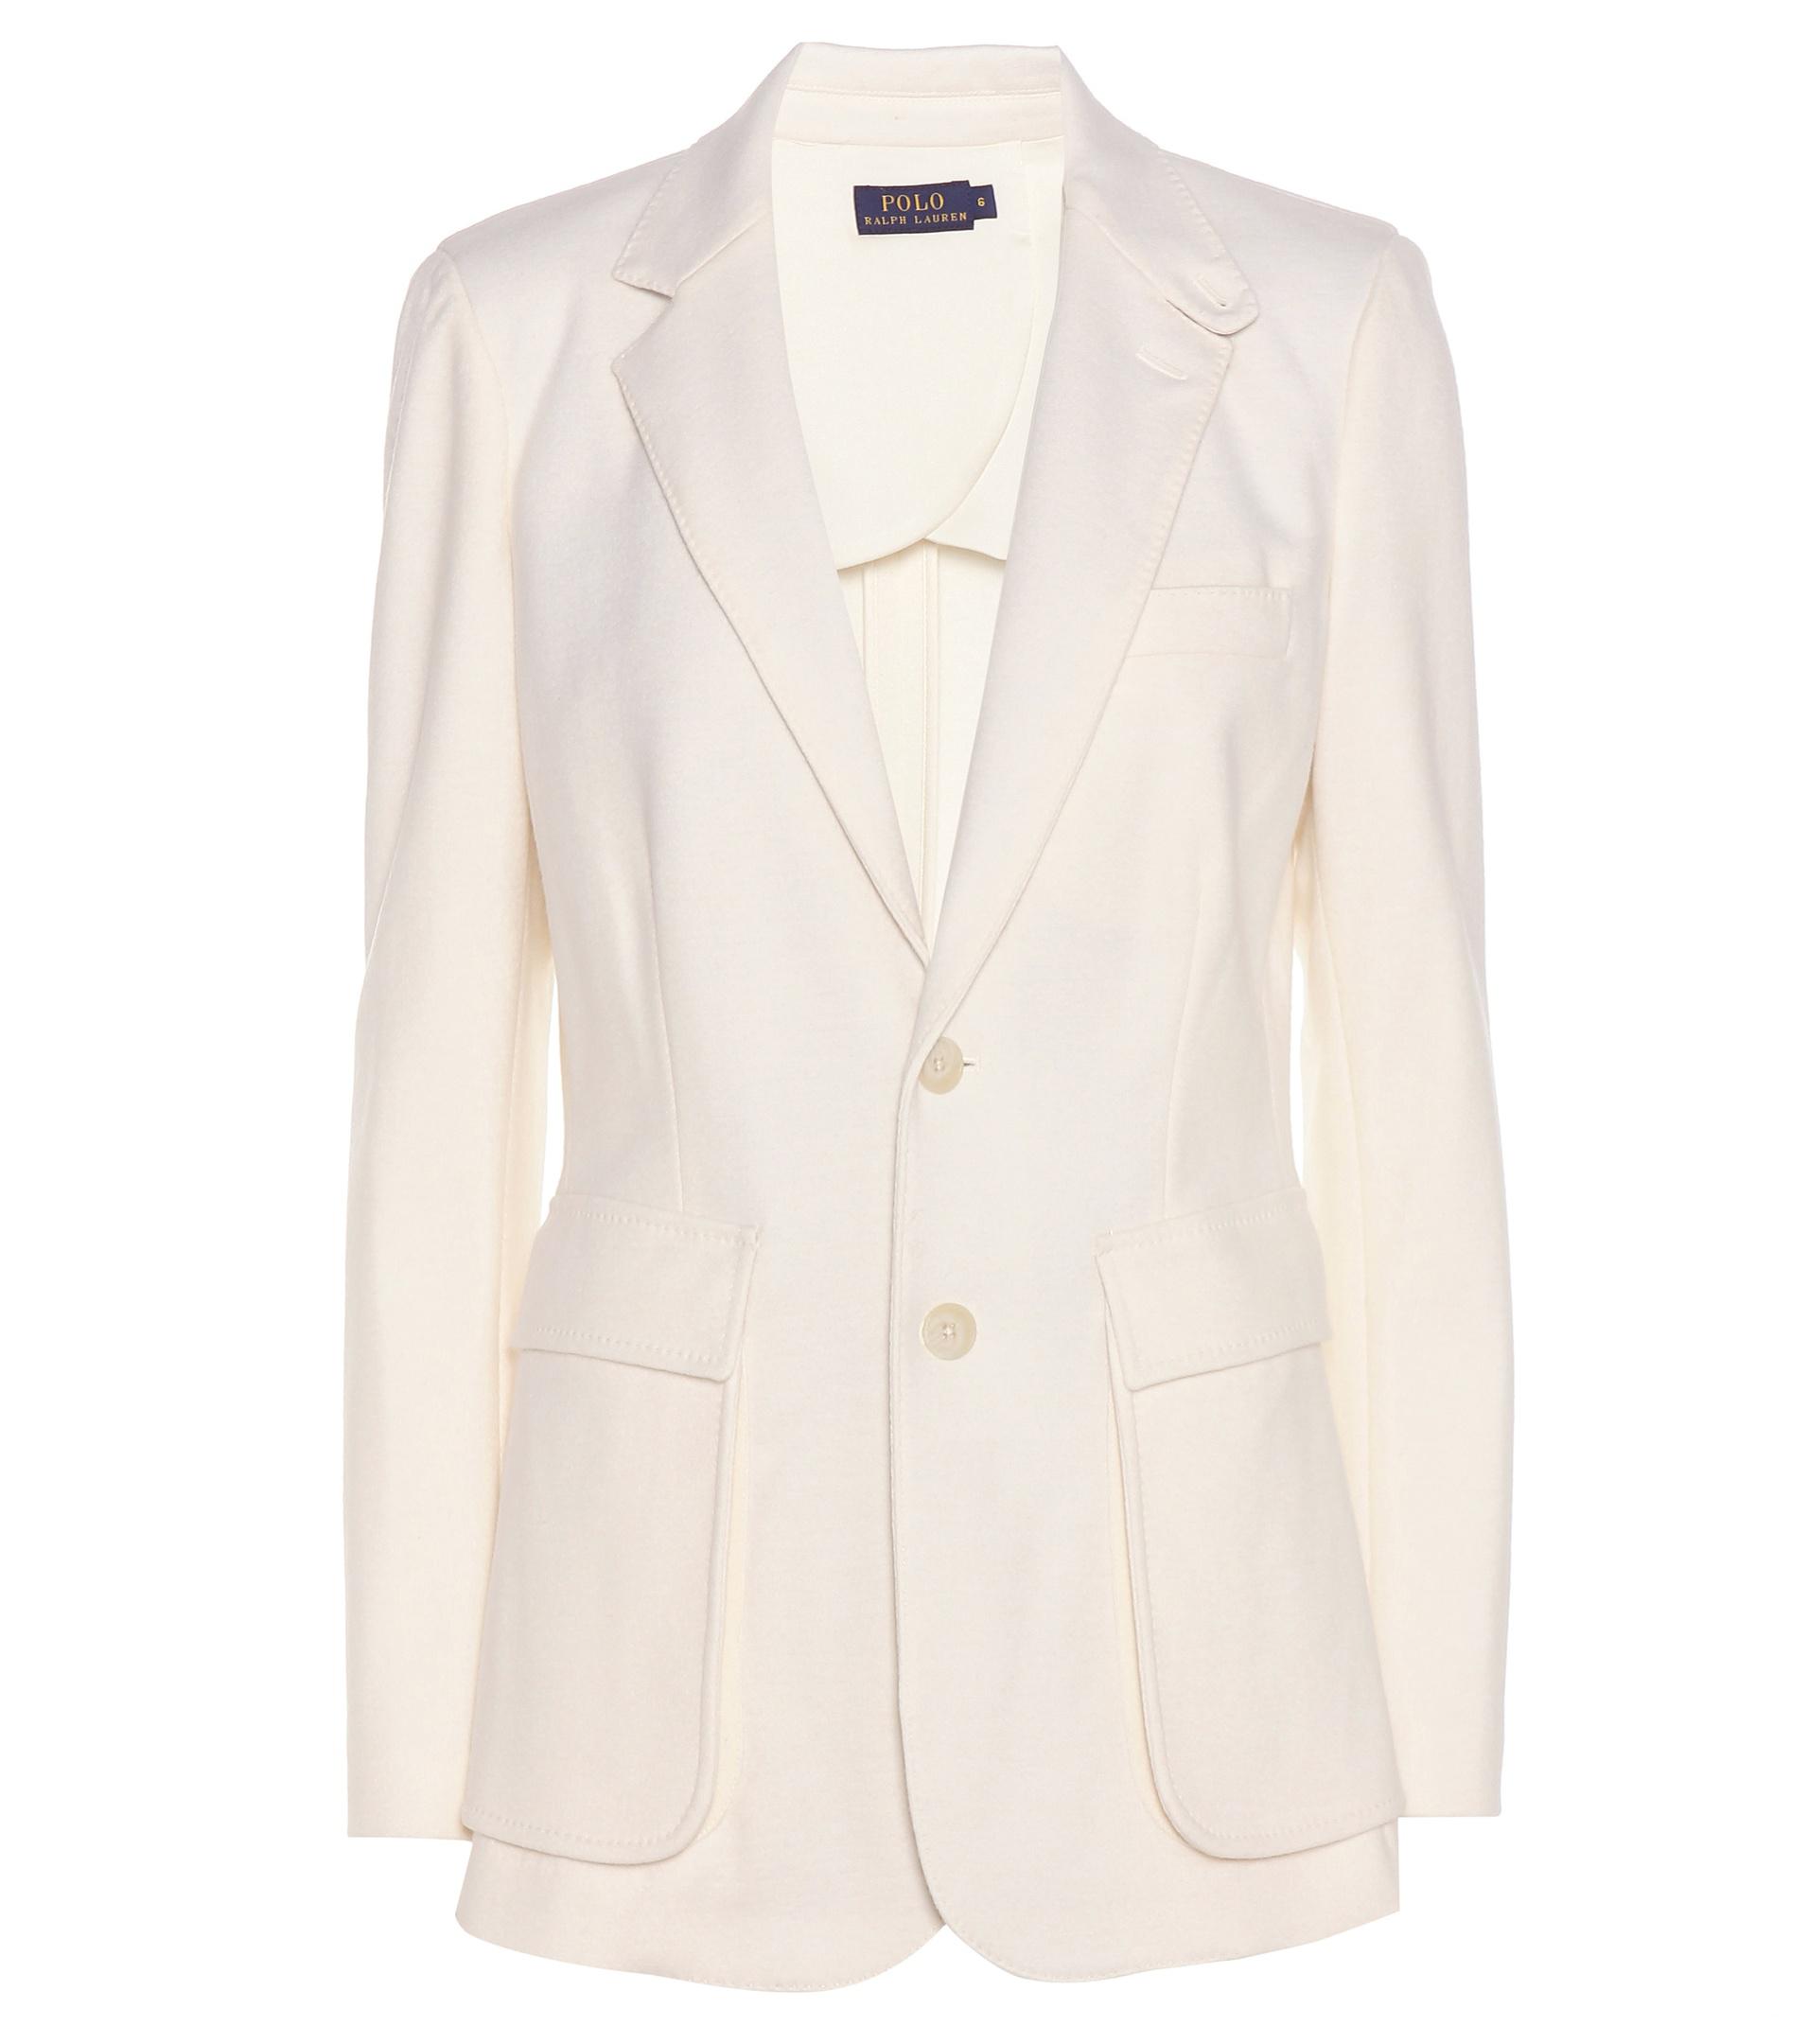 Lyst - Polo Ralph Lauren Wool-blend Jacket in White